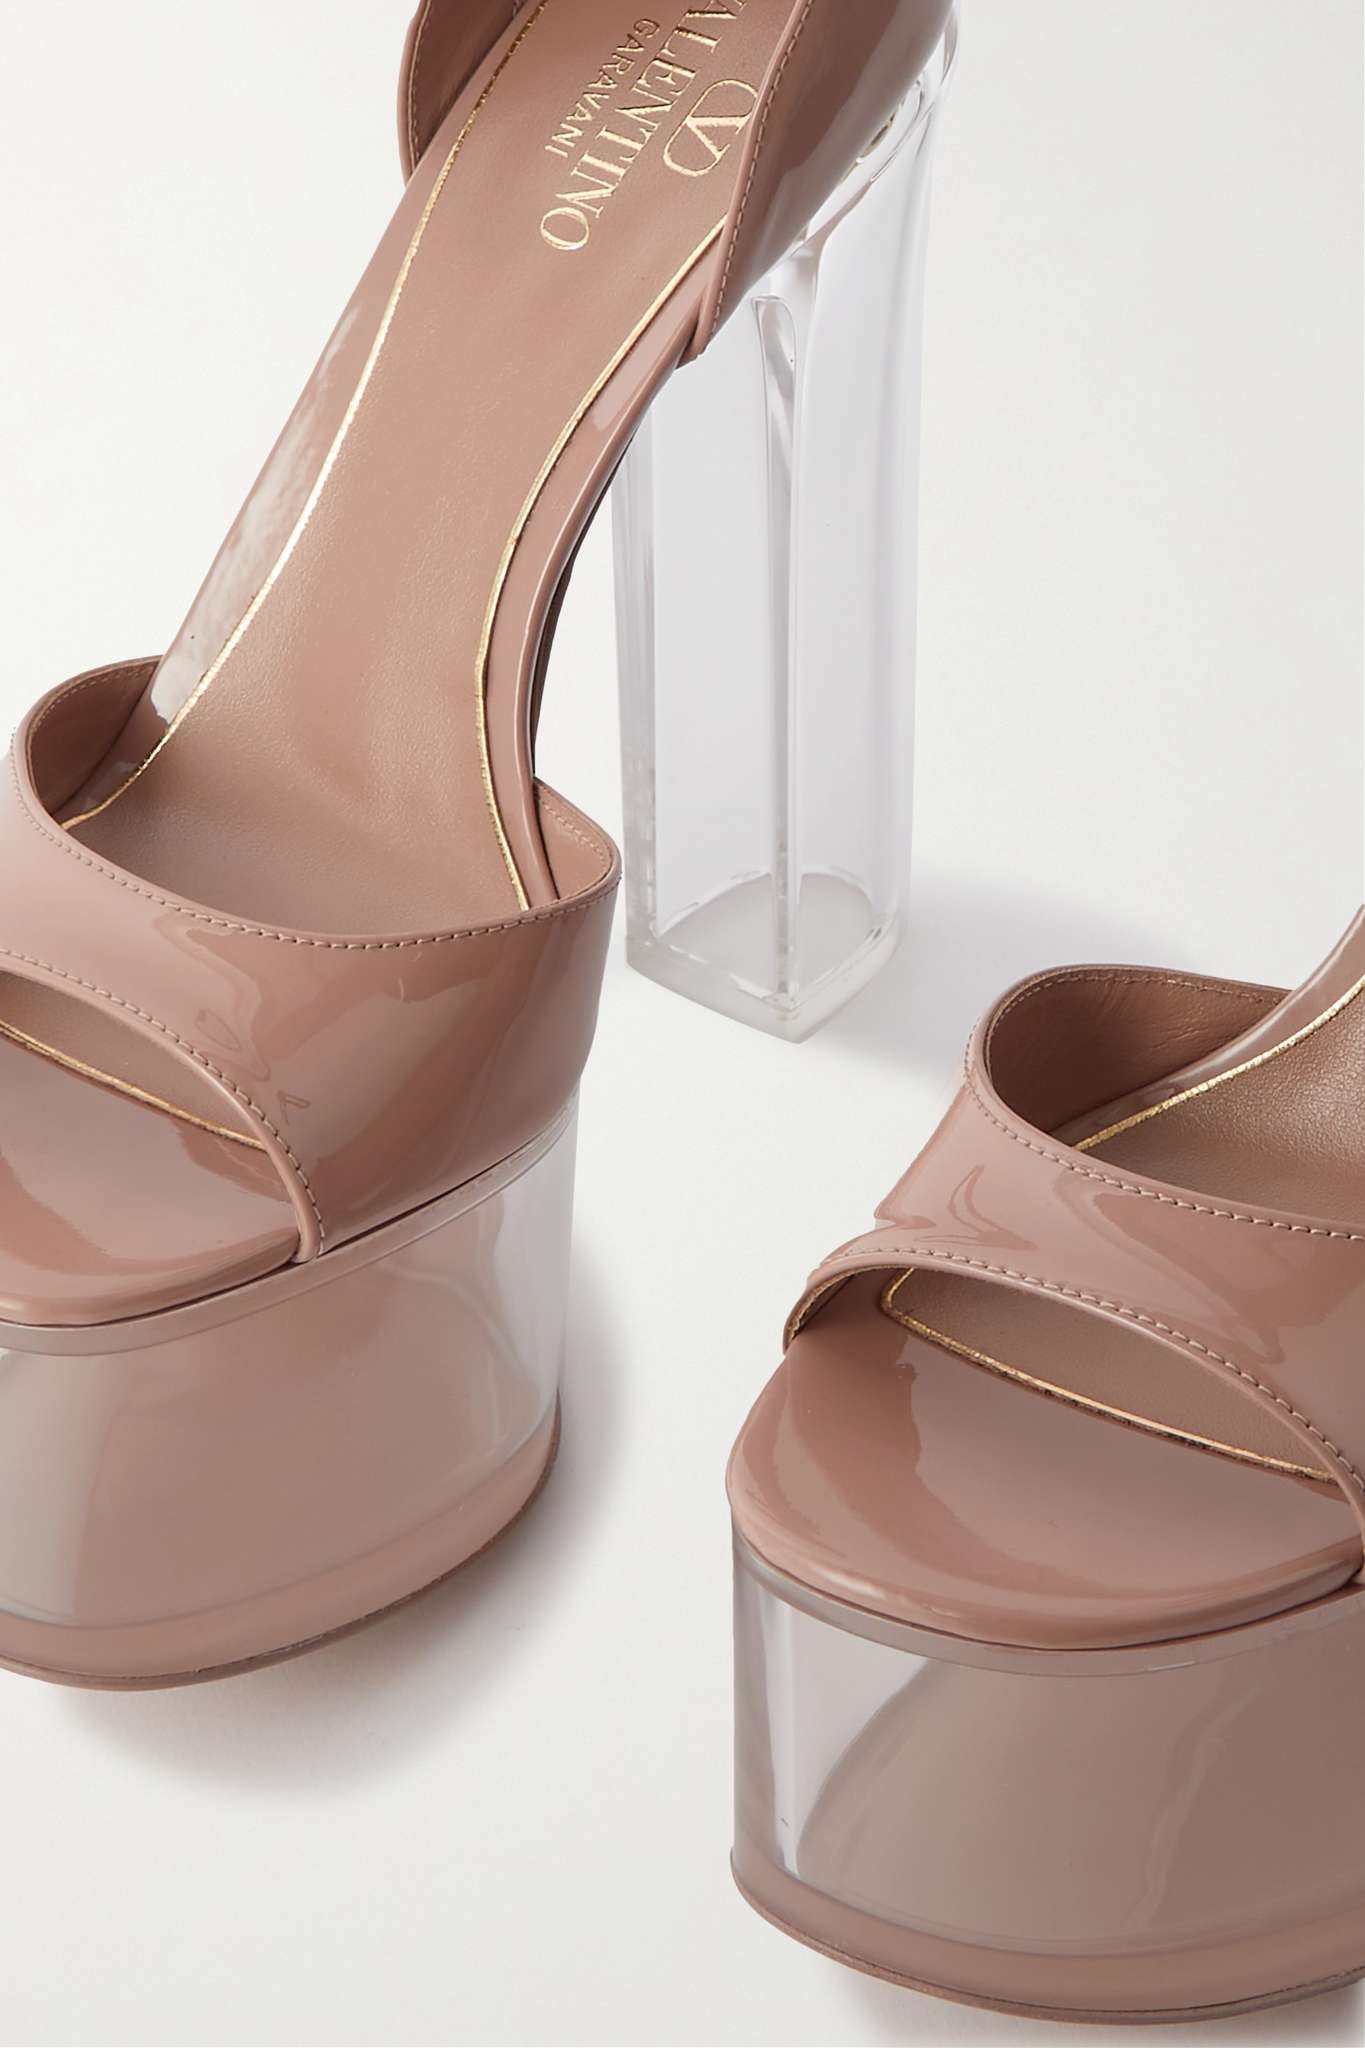 Tan-Go 155 patent leather platform sandals